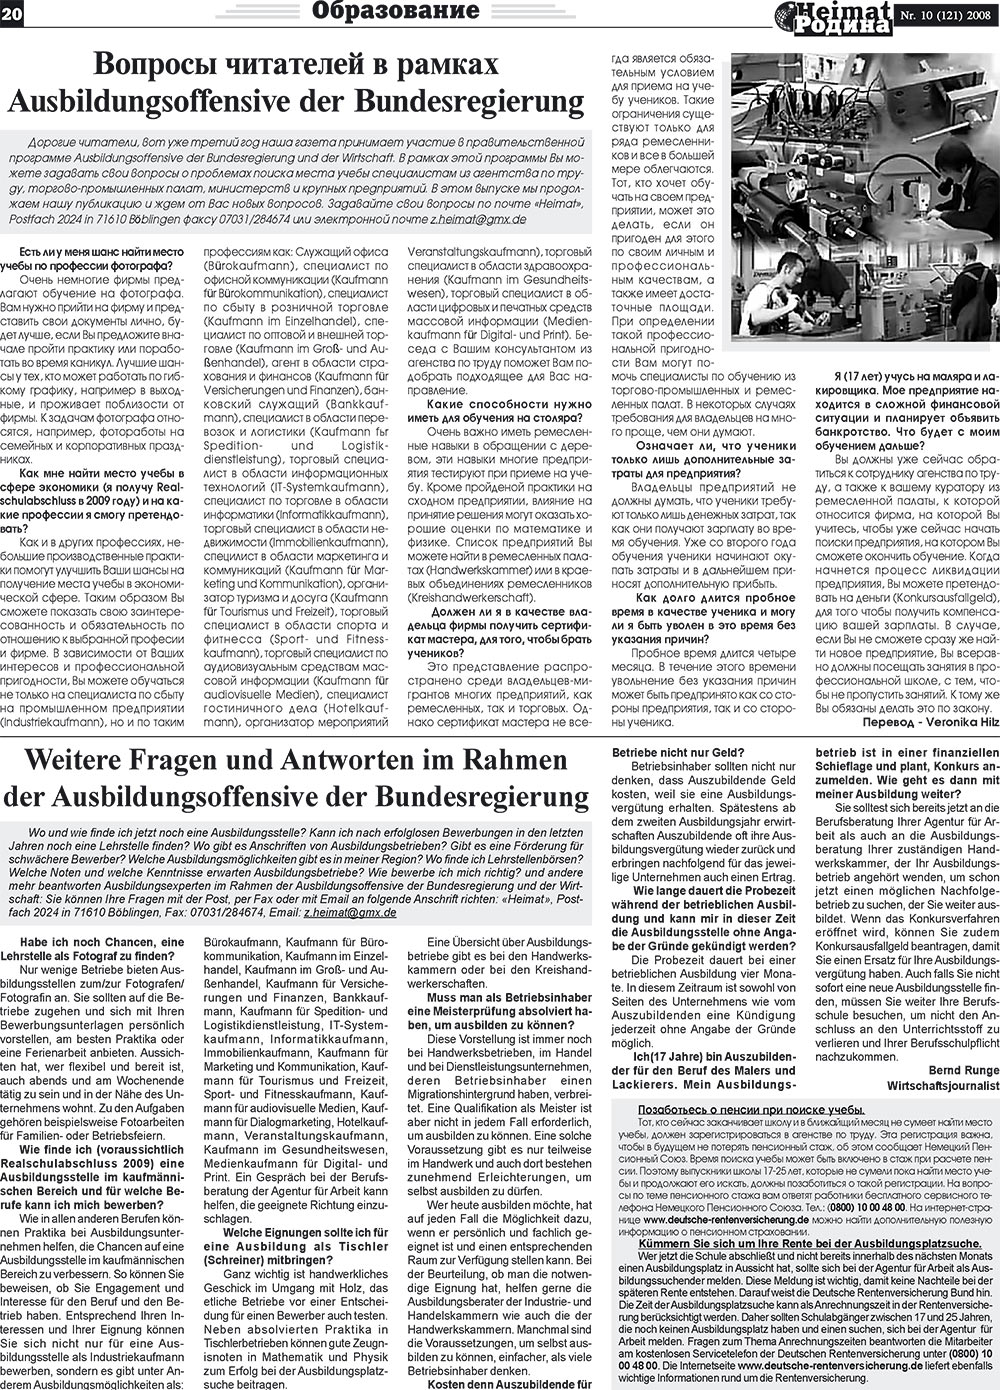 Heimat-Родина (газета). 2008 год, номер 10, стр. 20